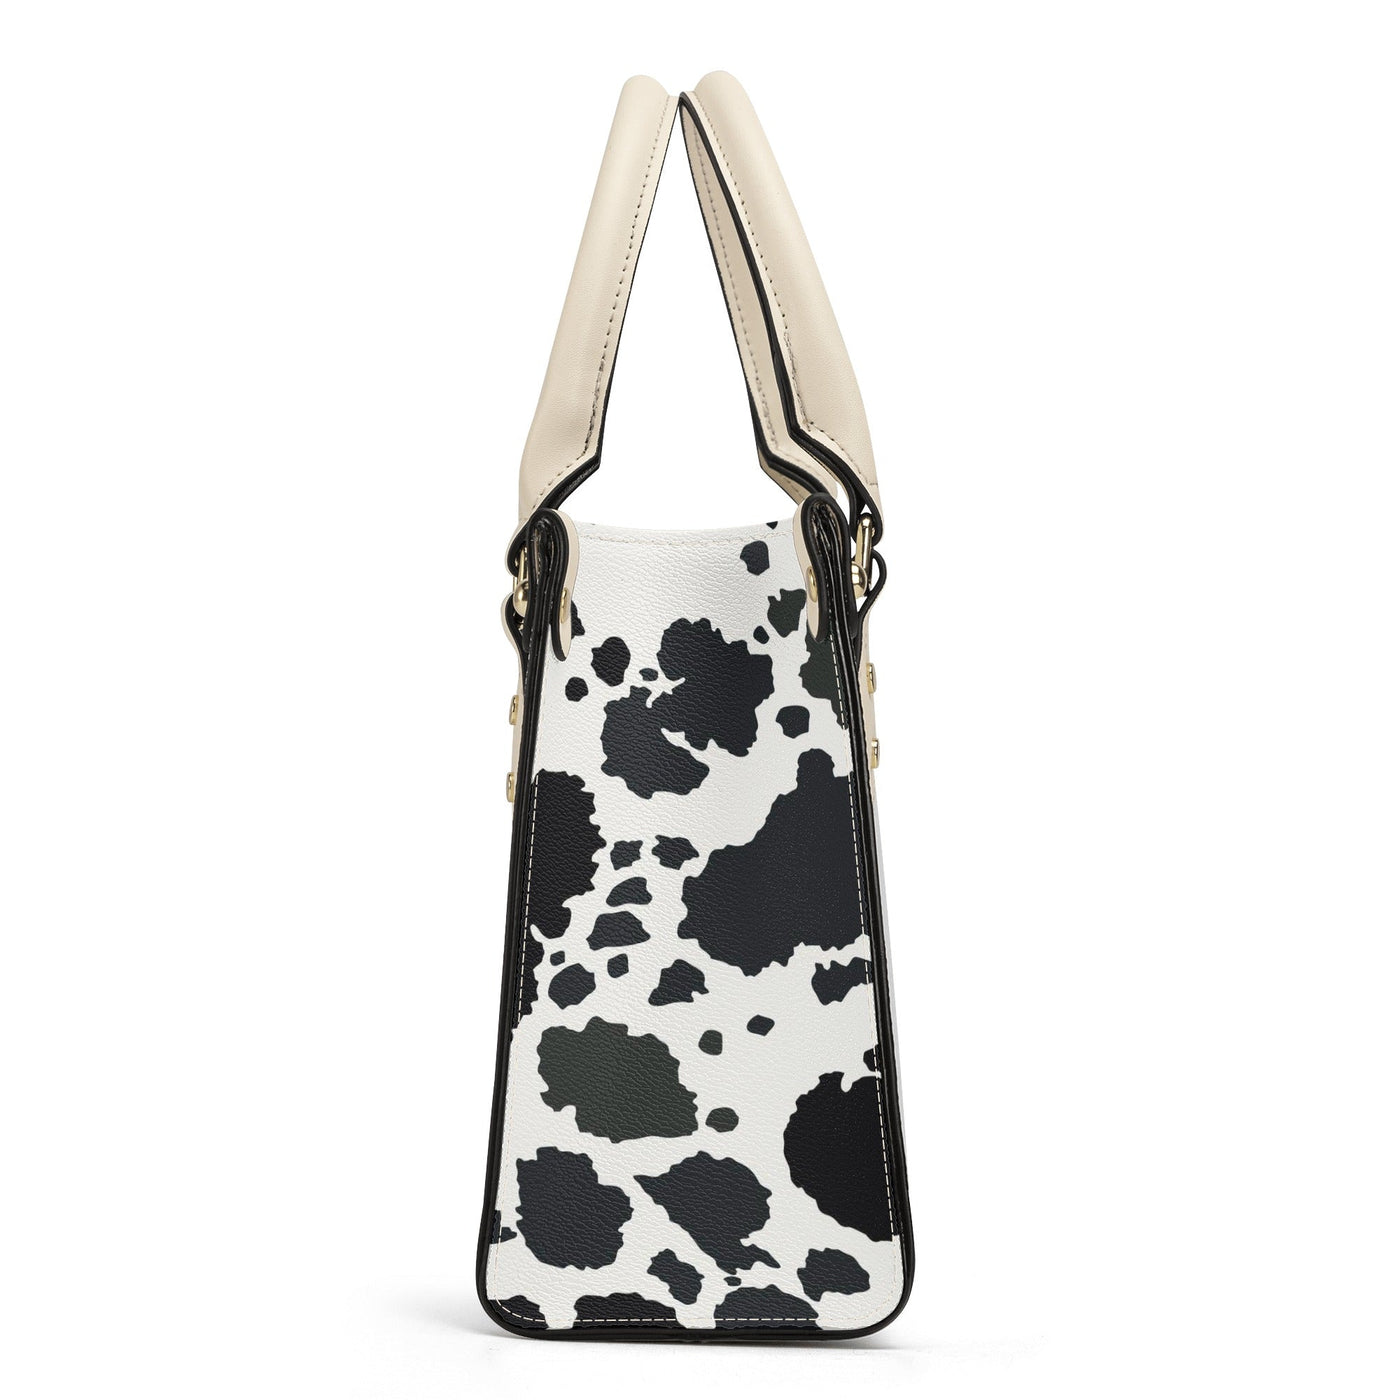 Moo-licious Cow Print Luxury Tote Handbag